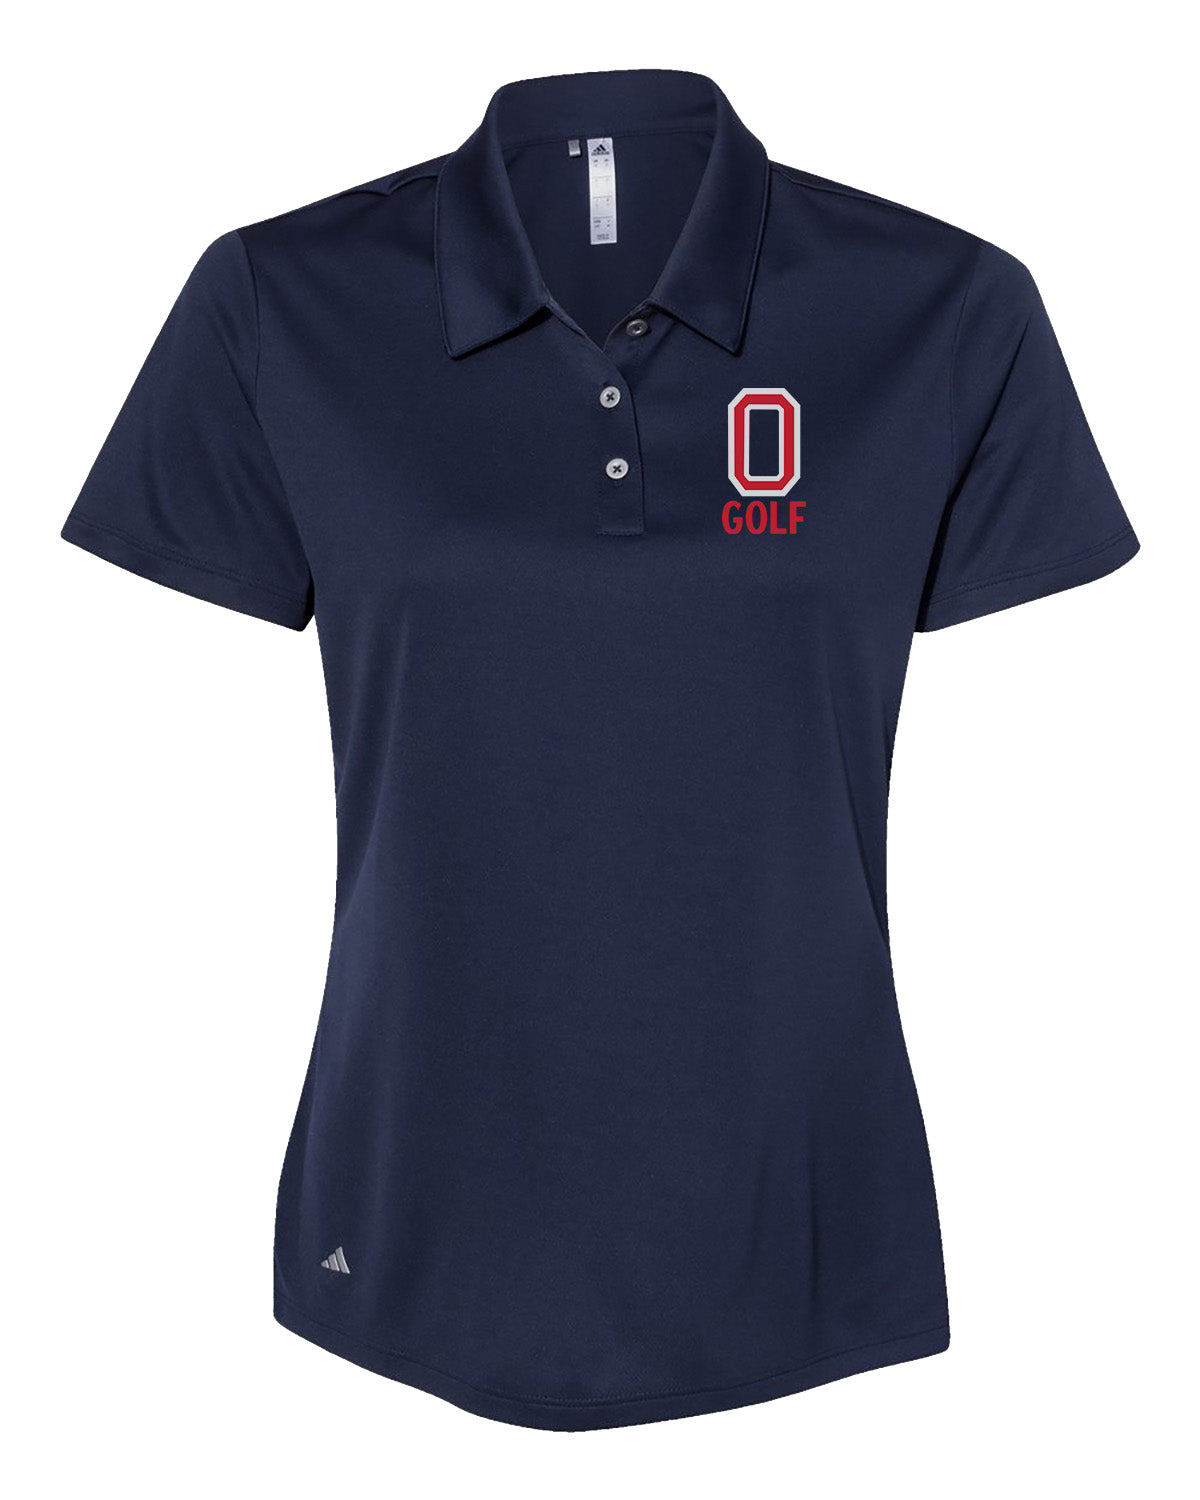 Orono Golf // Women's Polo - Adidas